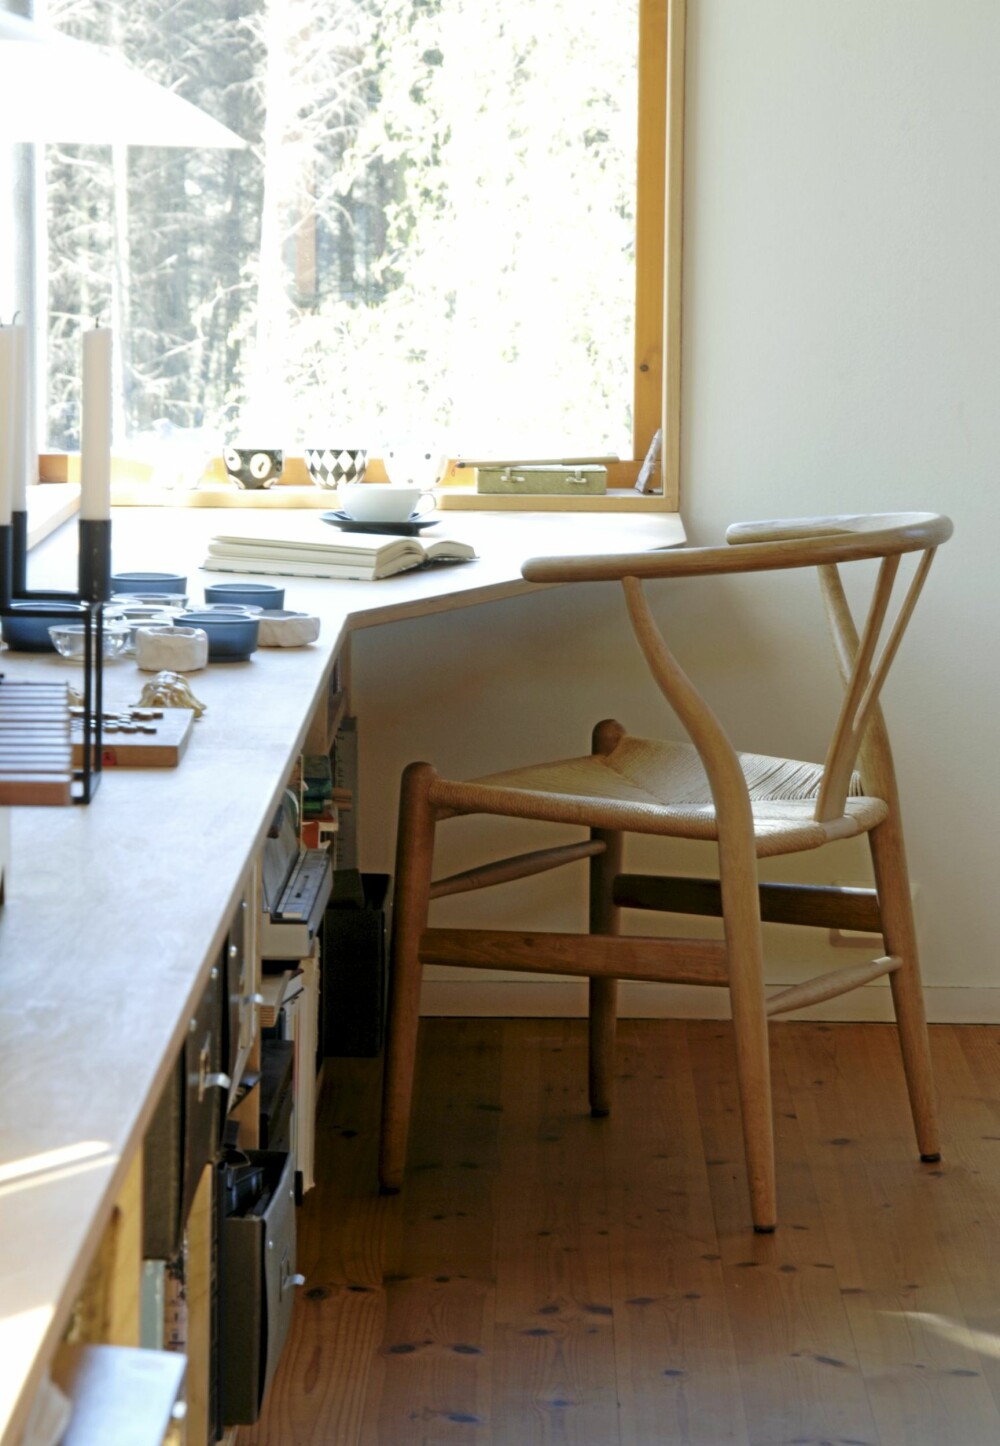 STEMNING MED TRE: Den skreddersydde arbeidsplassen i stuen flankeres av danske designklassikere.